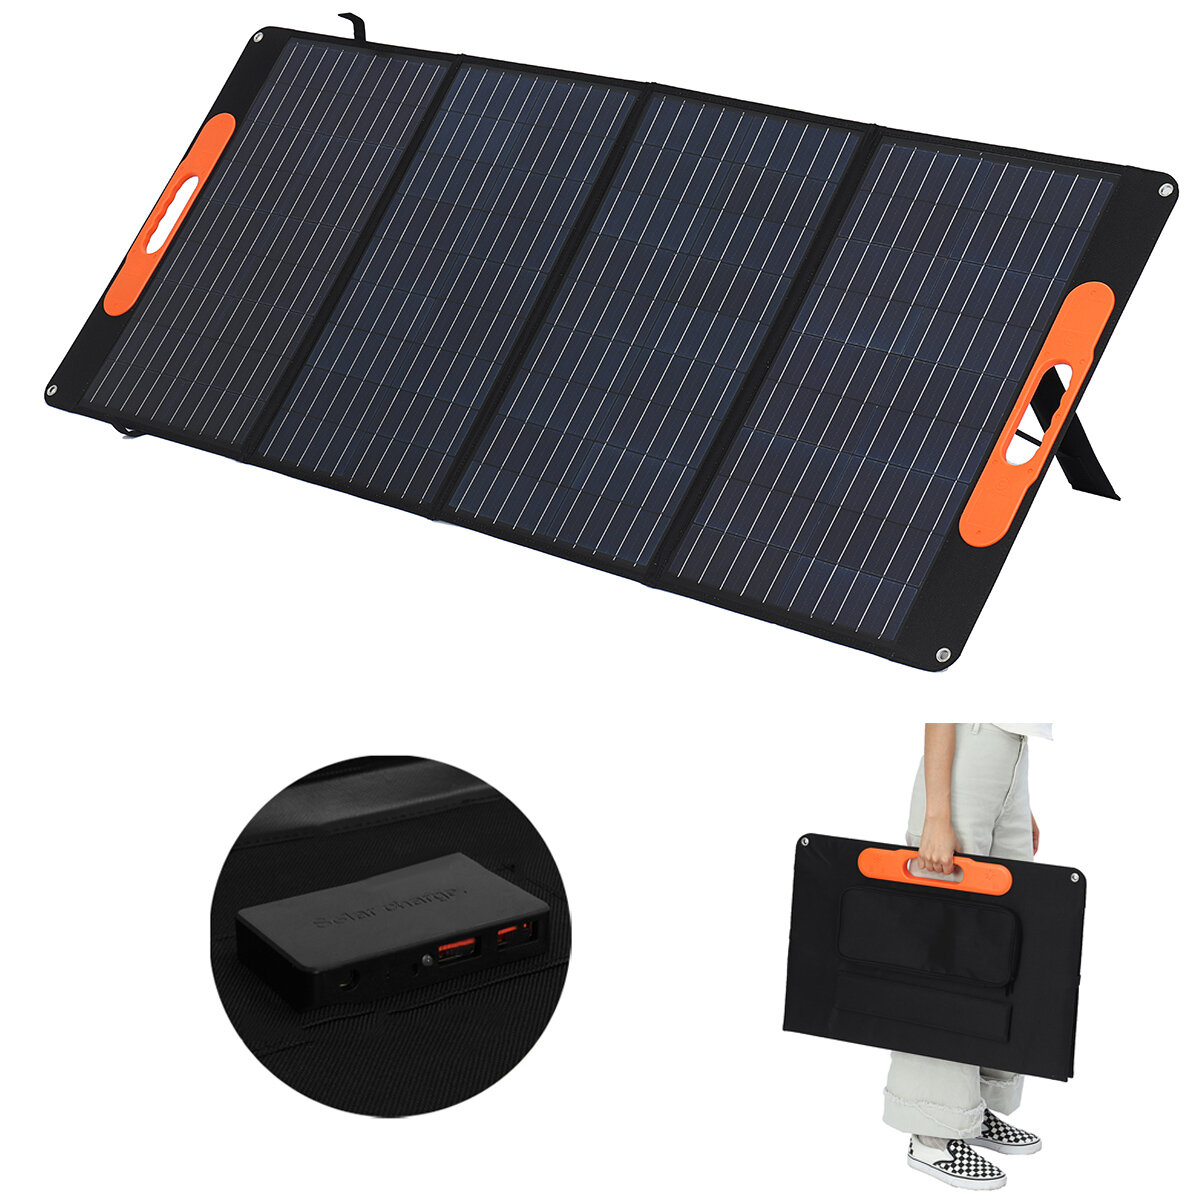 120W Solar Panel Katlanır Çanta 4'ü 1 Arada Çıkış Portu Taşınabilir Solar Güç Üretimi Çanta Taşınabilir Şarj Outdoor Kampçılık Seyahat